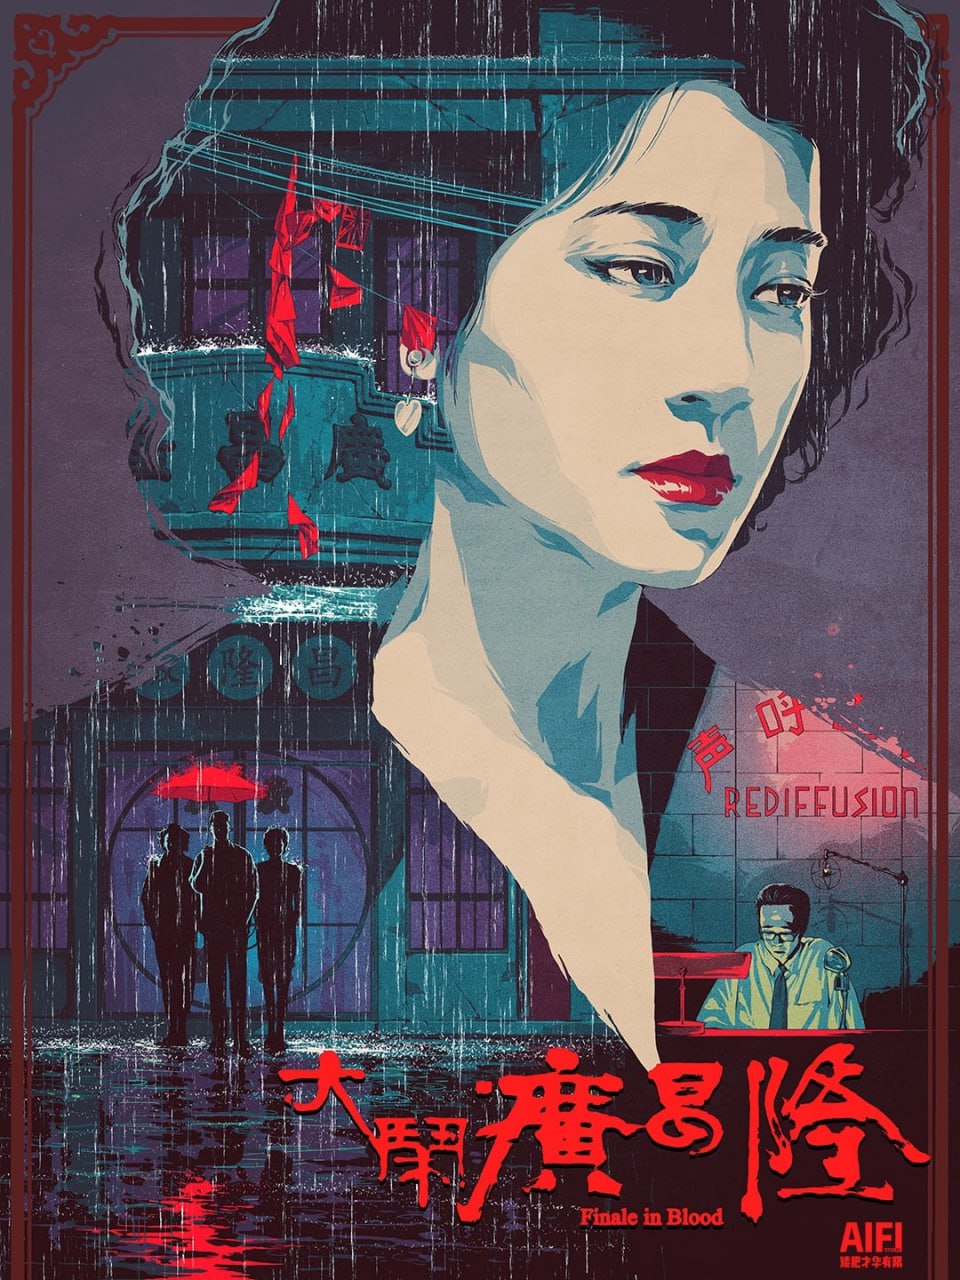 大闹广昌隆 (1993)